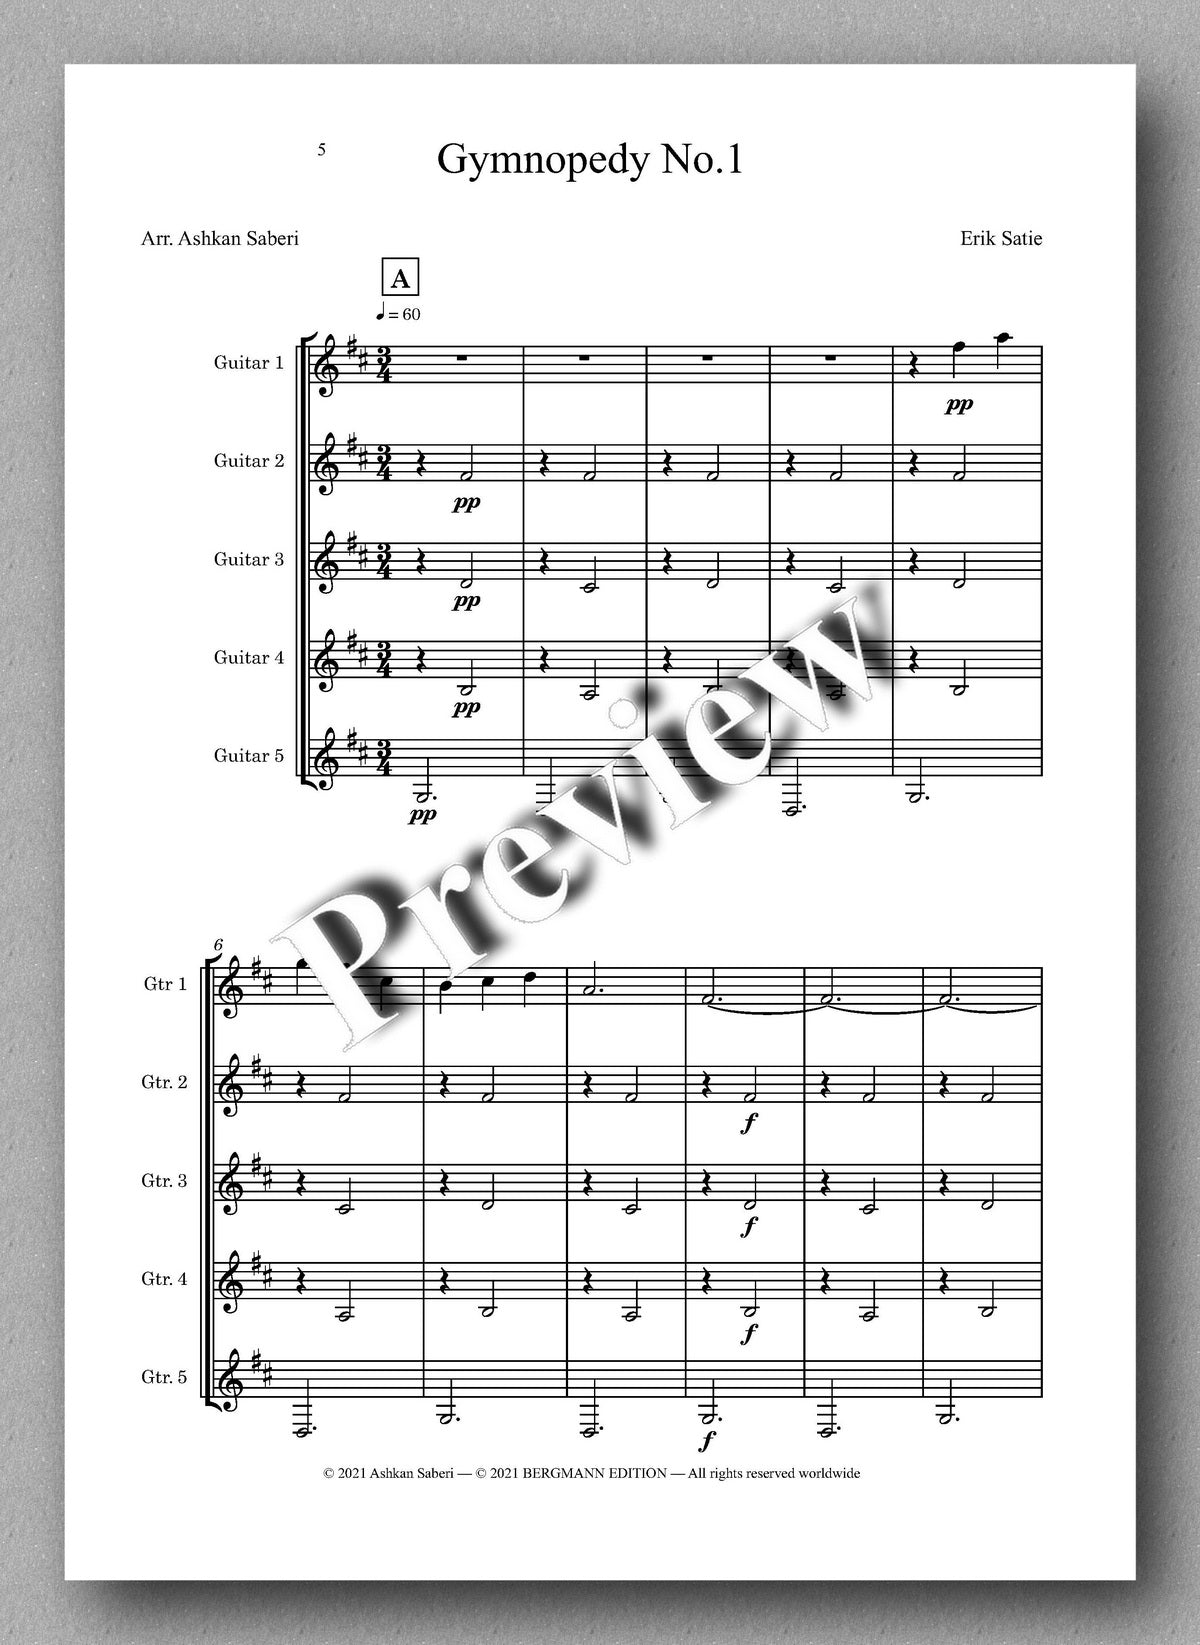 Erik Satie, Gymnopedy No.1 and No. 3 - music score 1